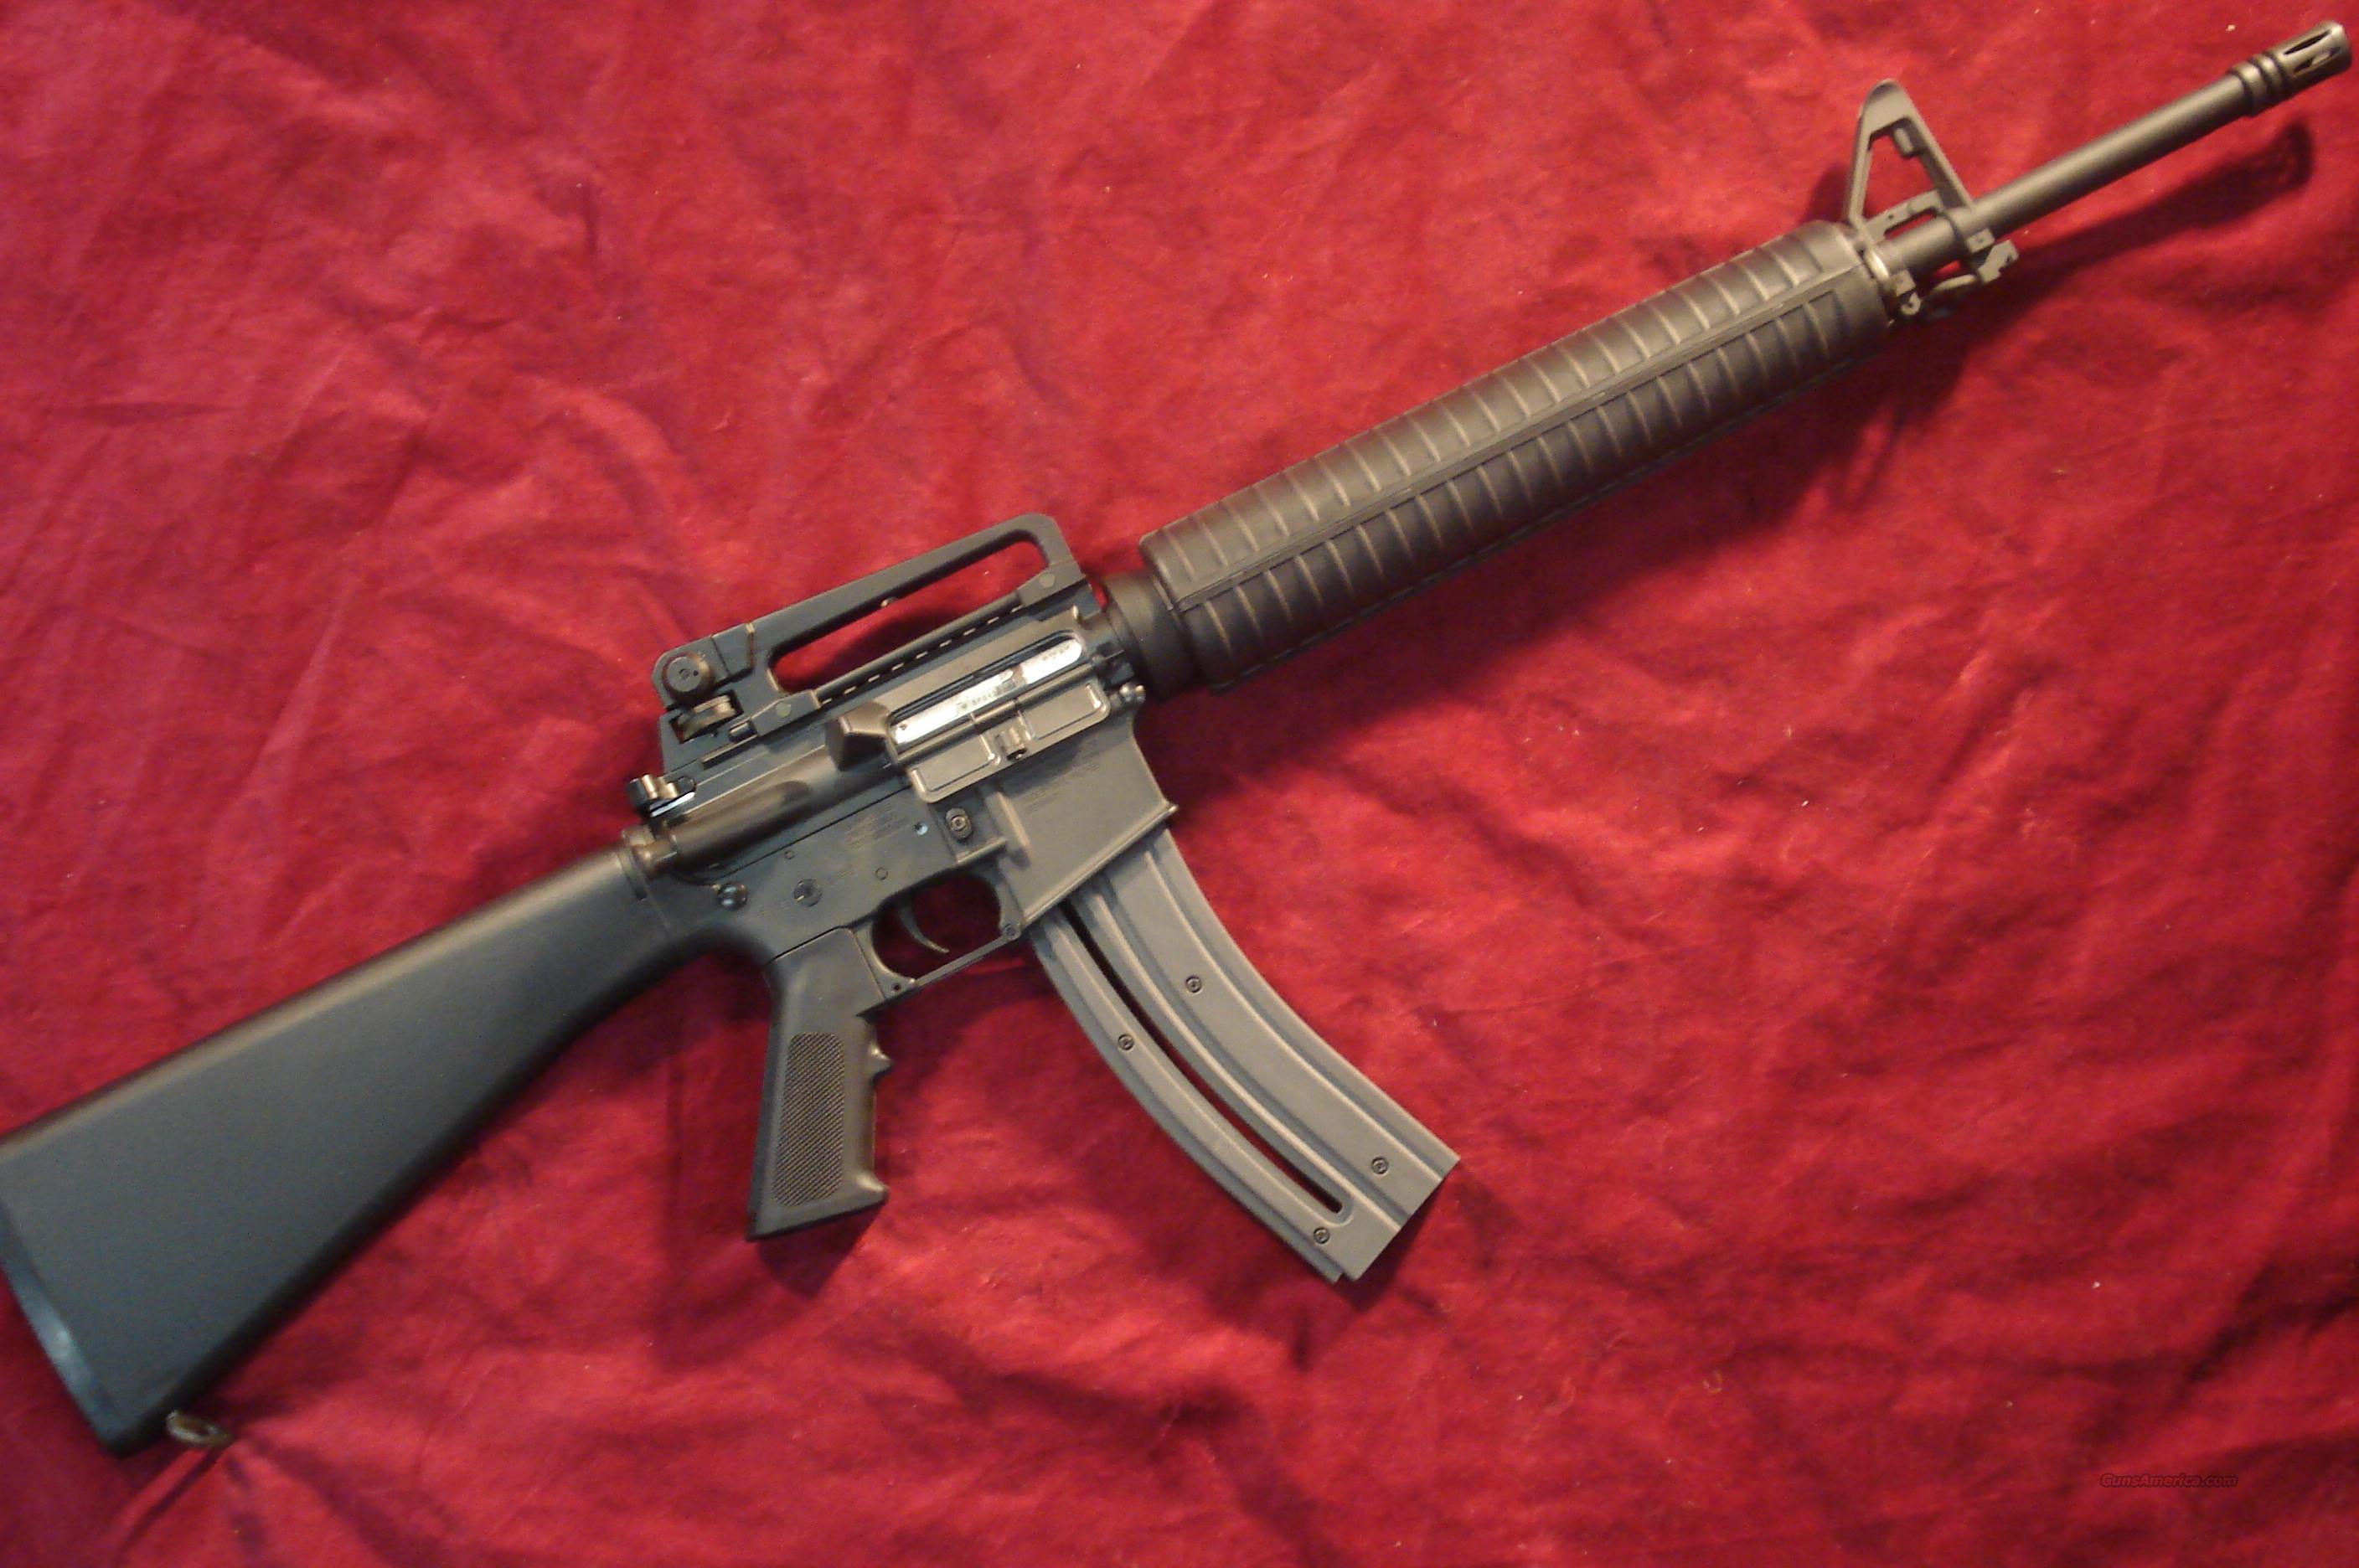 COLT M16 SPORTER 22LR CAL. NEW for sale at Gunsamerica.com: 945350580